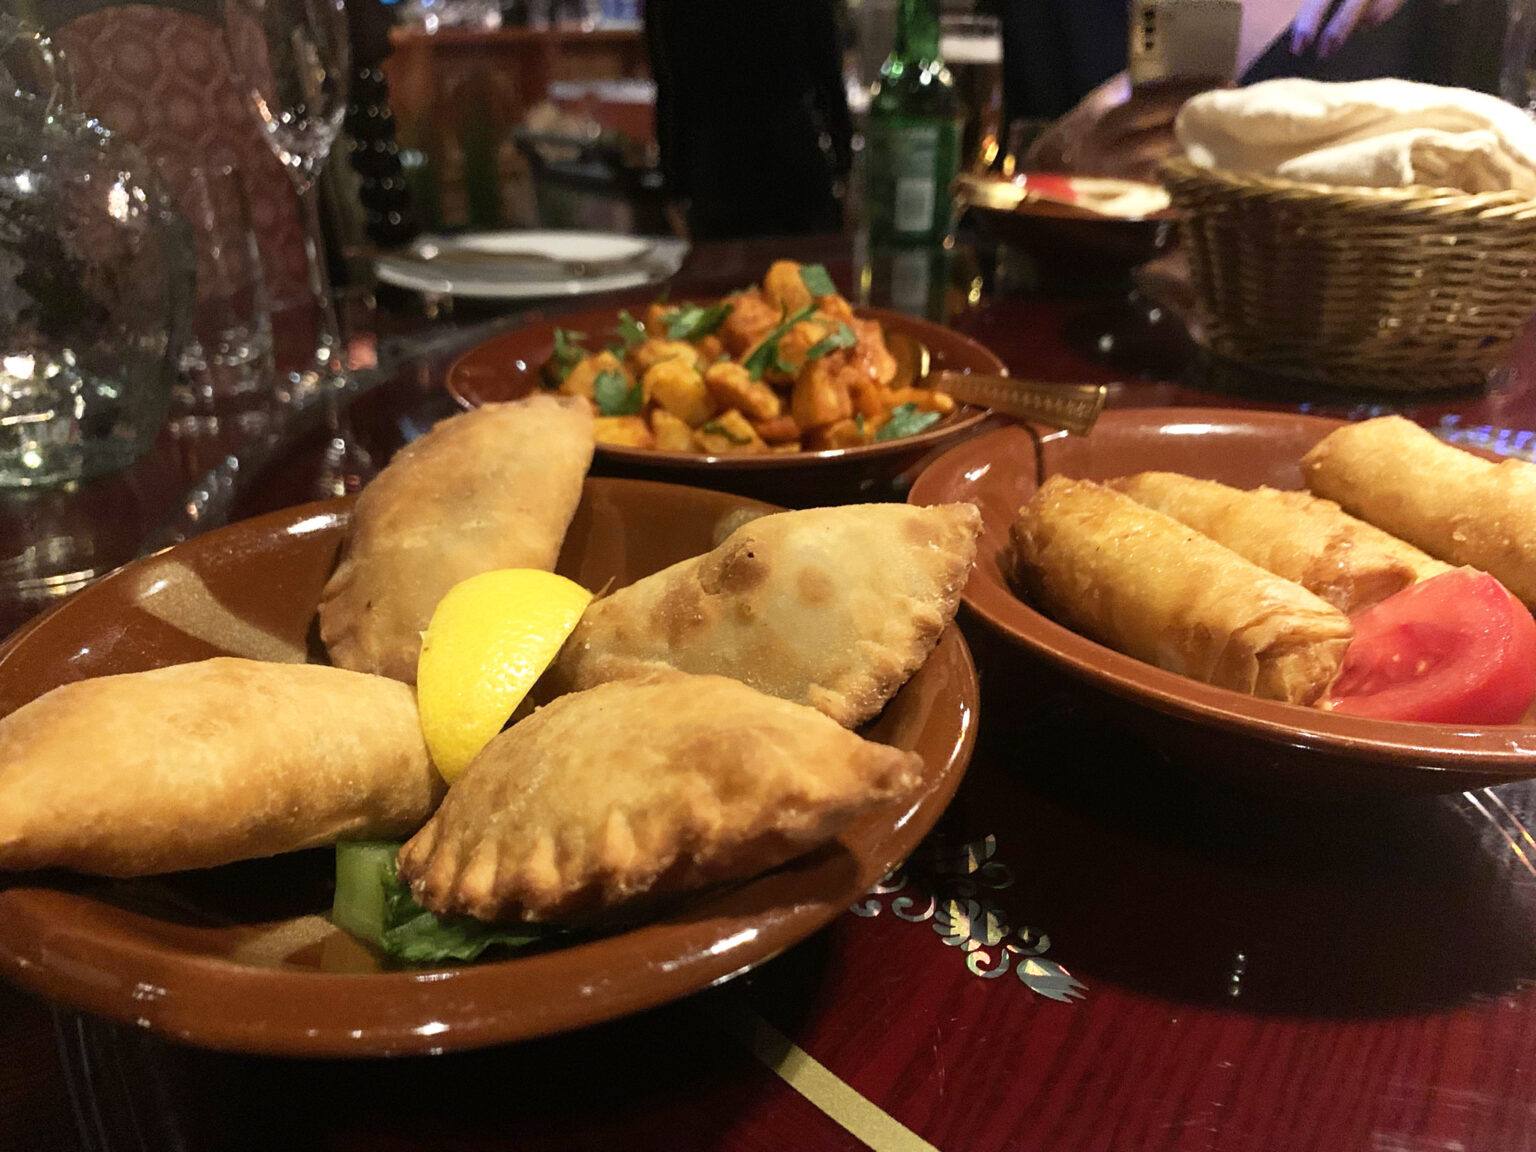 Mellanöstern inspirerad mat ligger snyggt upplagd på olika bruna fat på en restaurang.